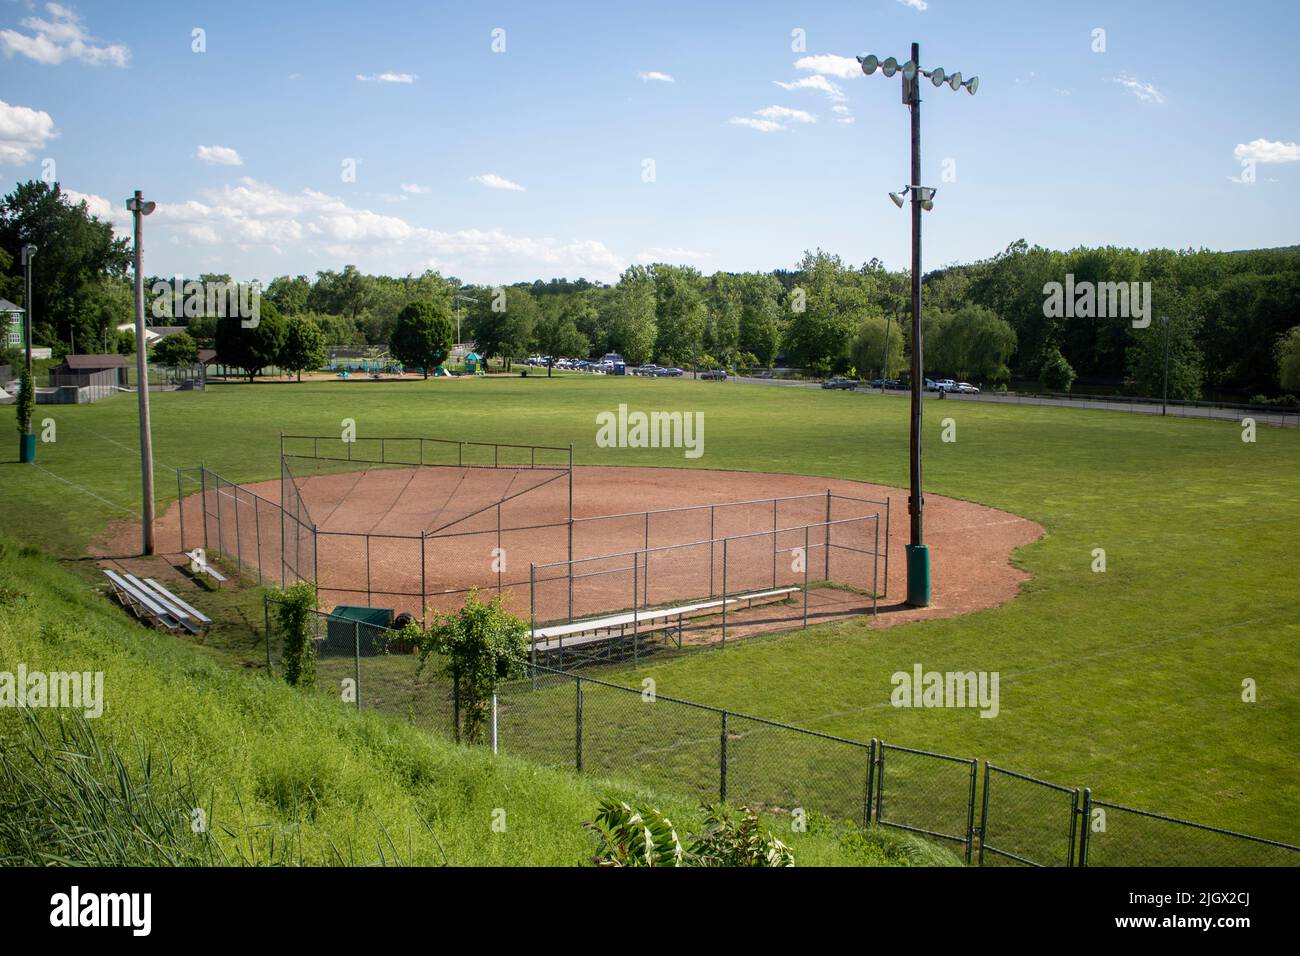 Park public baseball diamond for a birds eye view Stock Photo